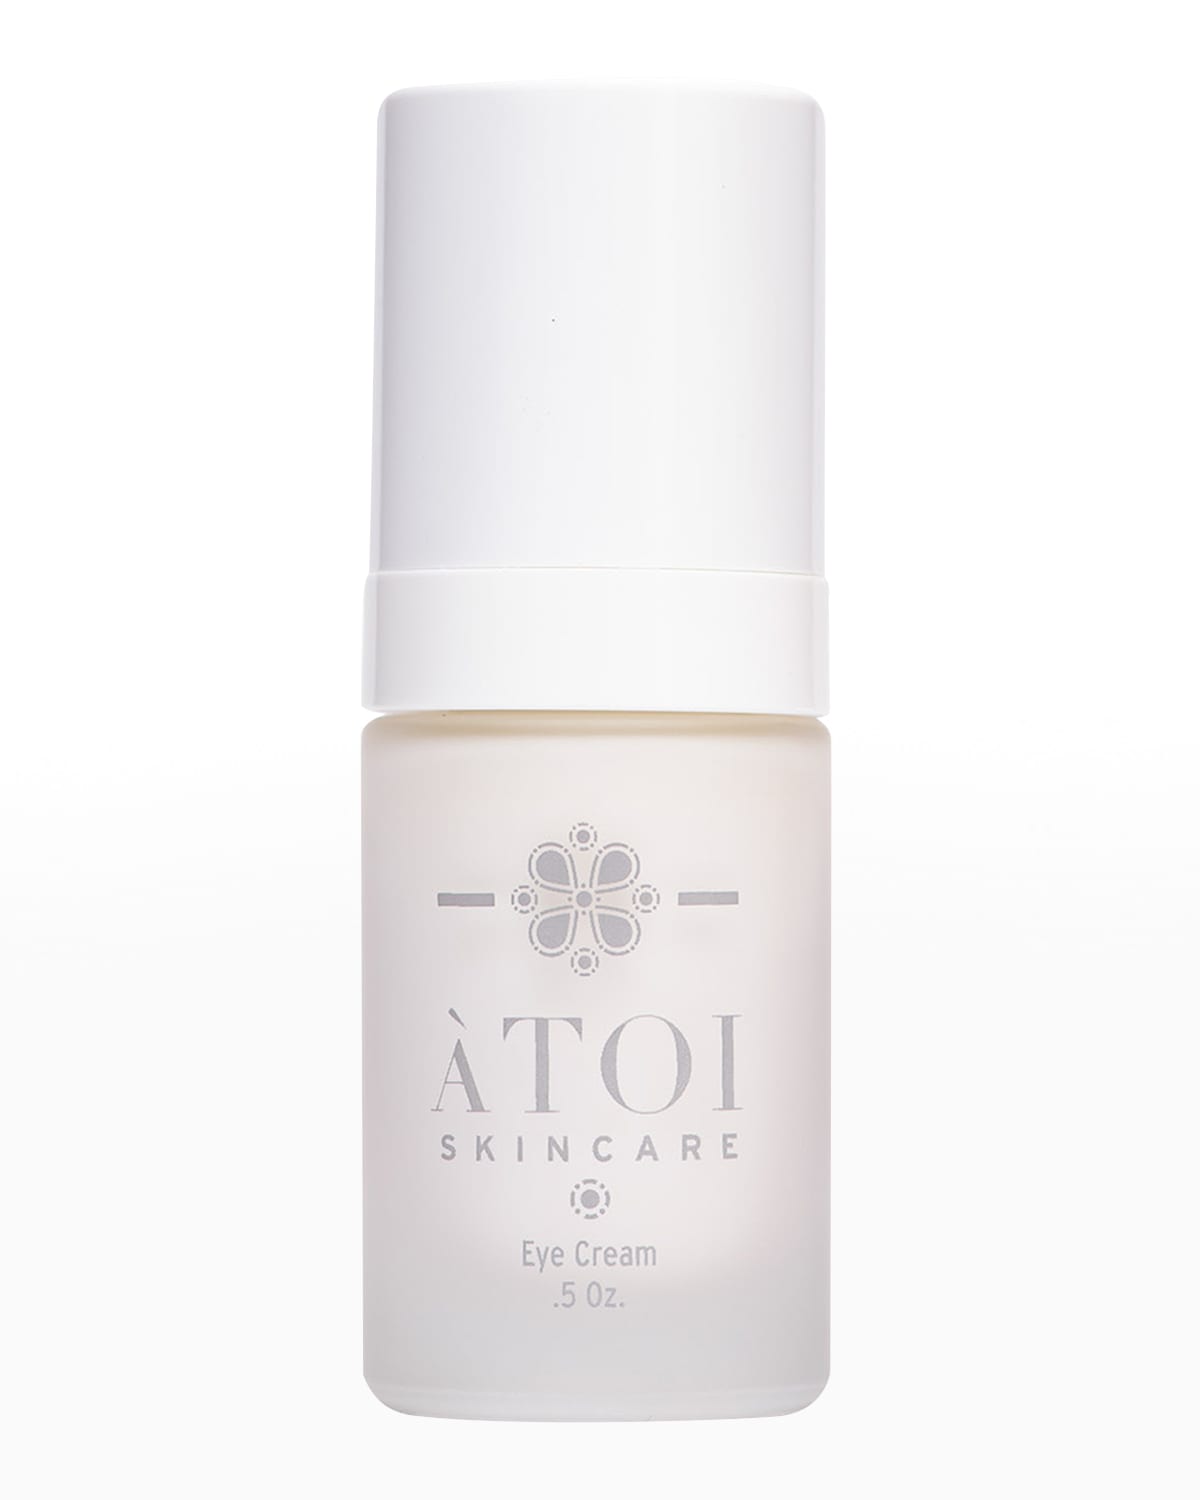 ATOI Skincare Eye Cream, 0.5 oz.